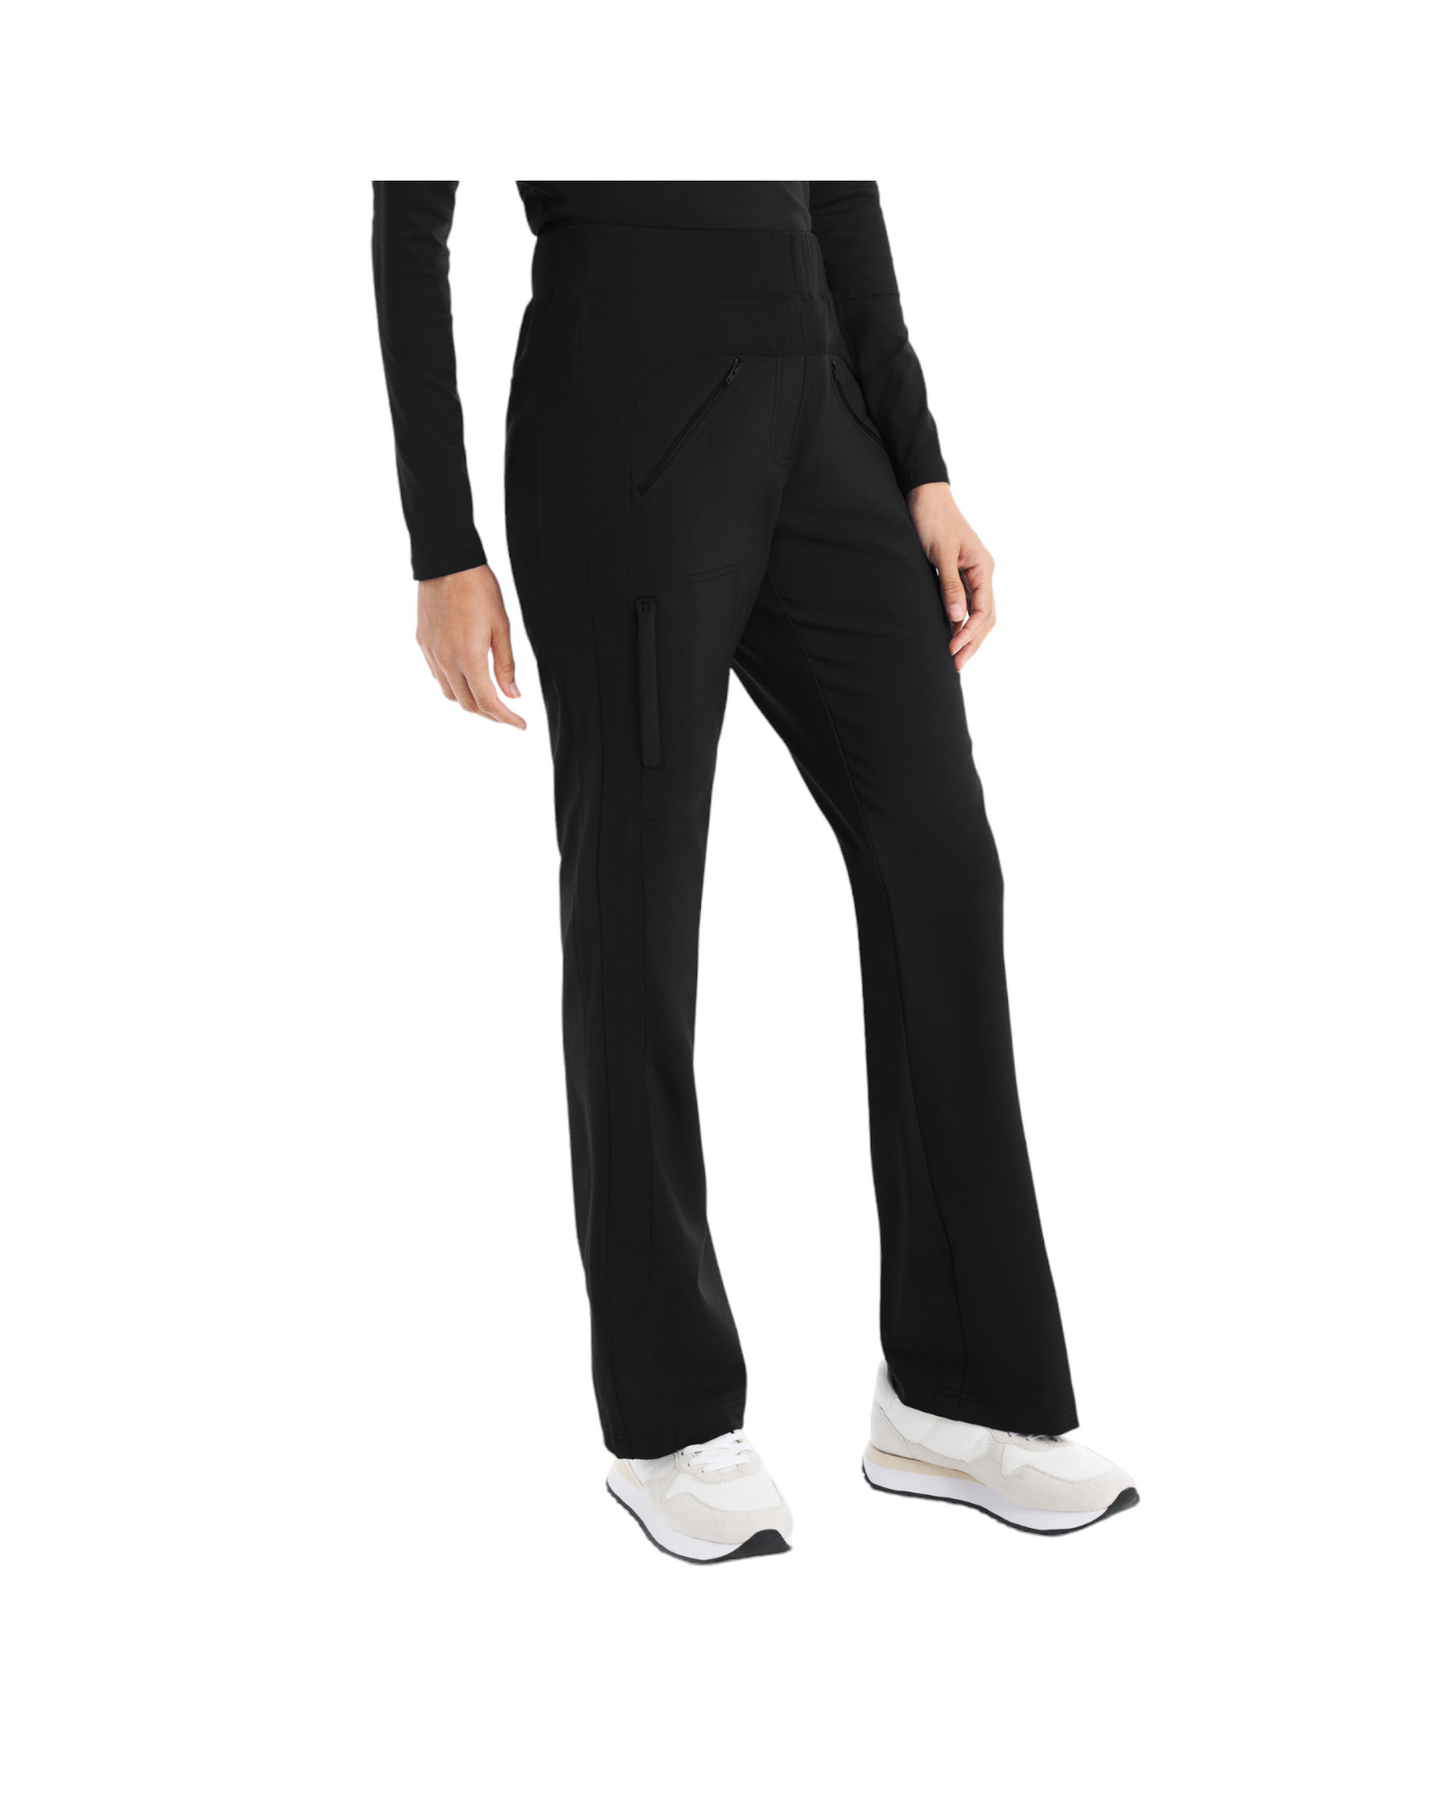 Pantalon d'uniforme jambes évasées style ''bootcut'' pour femme White Cross CRFT #WB414 couleur  noir